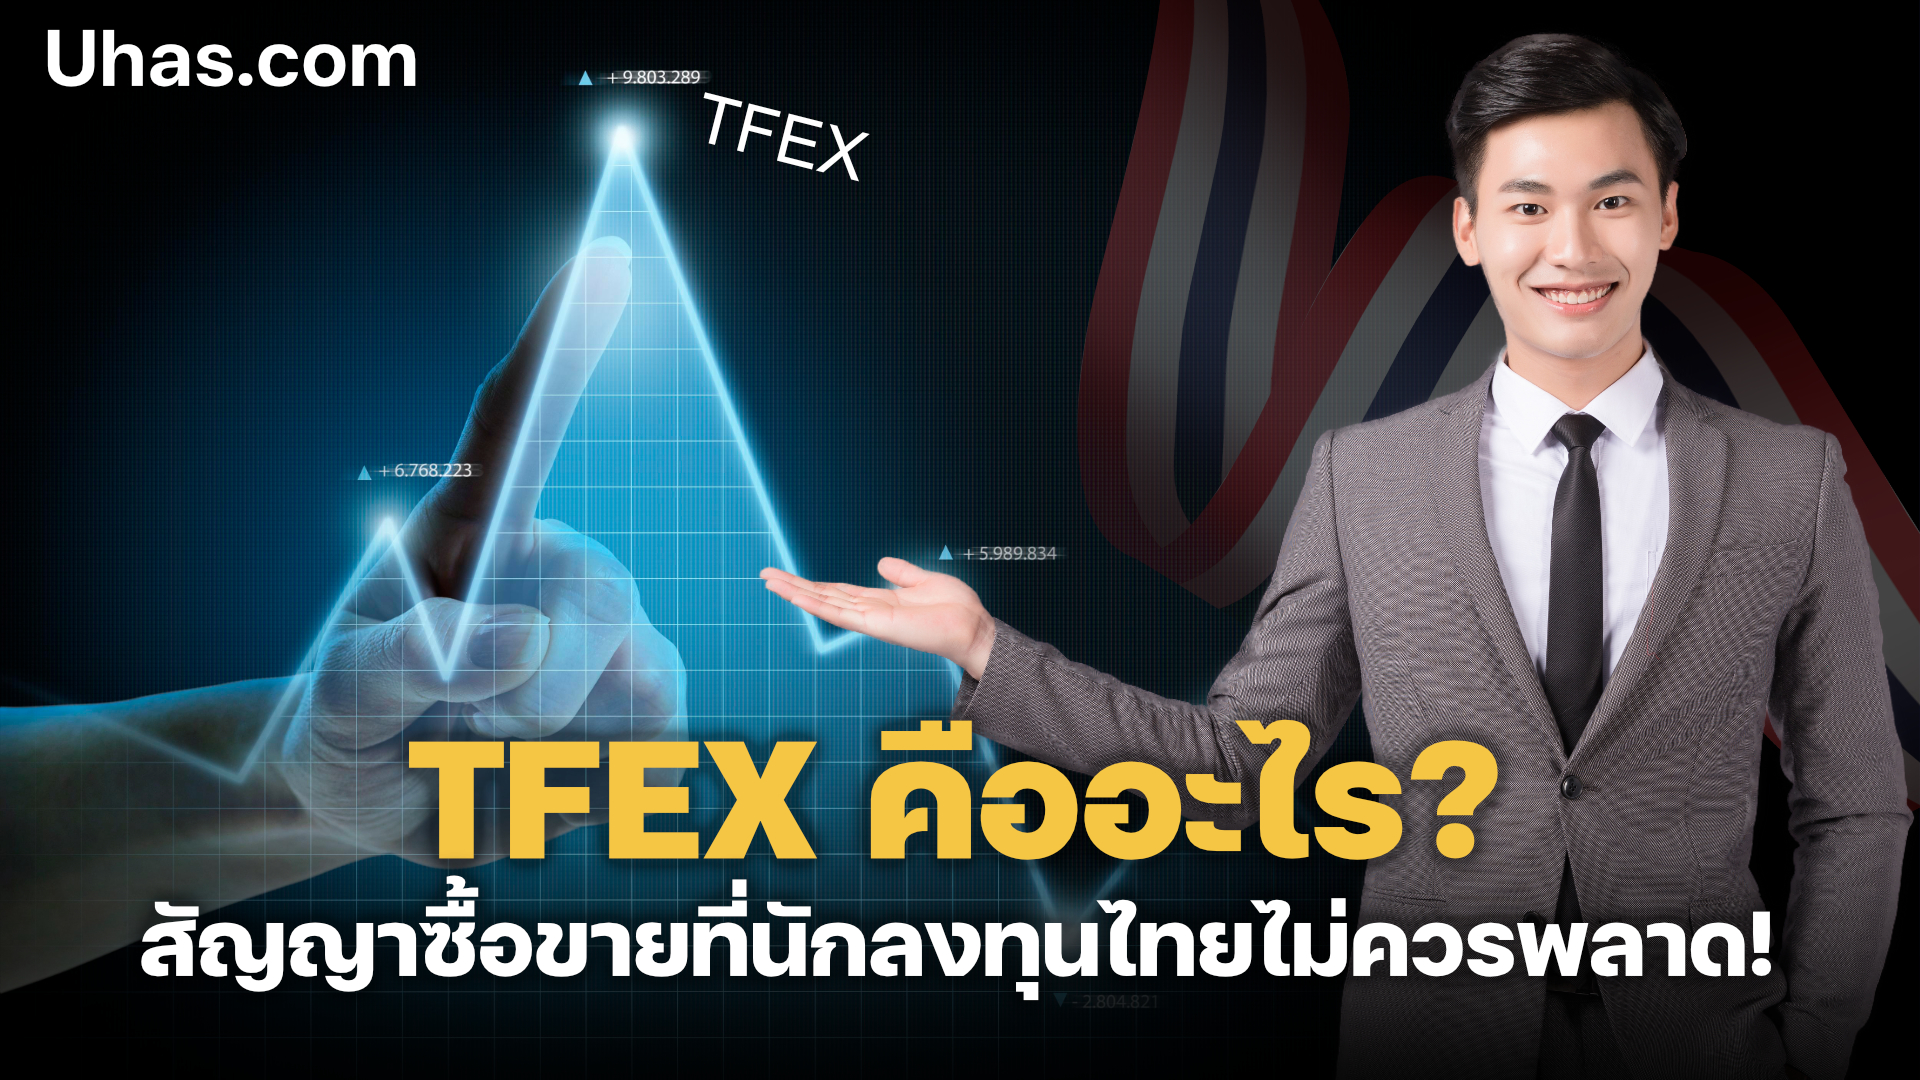 TFEX คืออะไร สัญญาซื้อขายที่นักลงทุนไทยไม่ควรพลาด - uhas